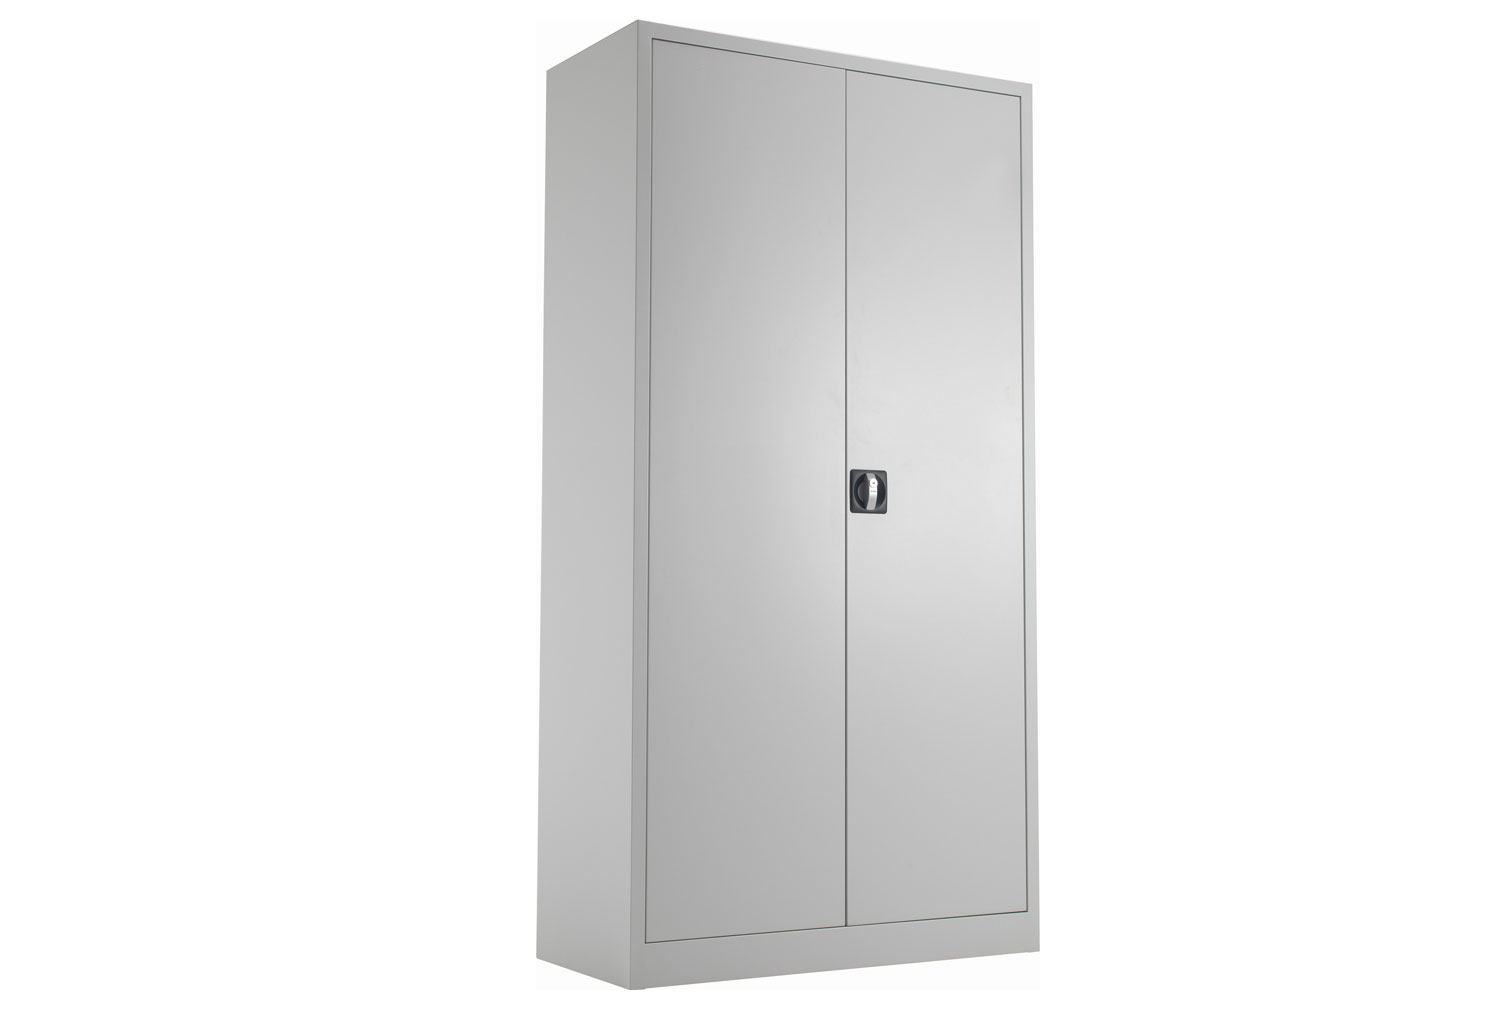 Value Line Metal Double Door Office Cupboards, 3 Shelf - 92wx42dx179h (cm), Grey